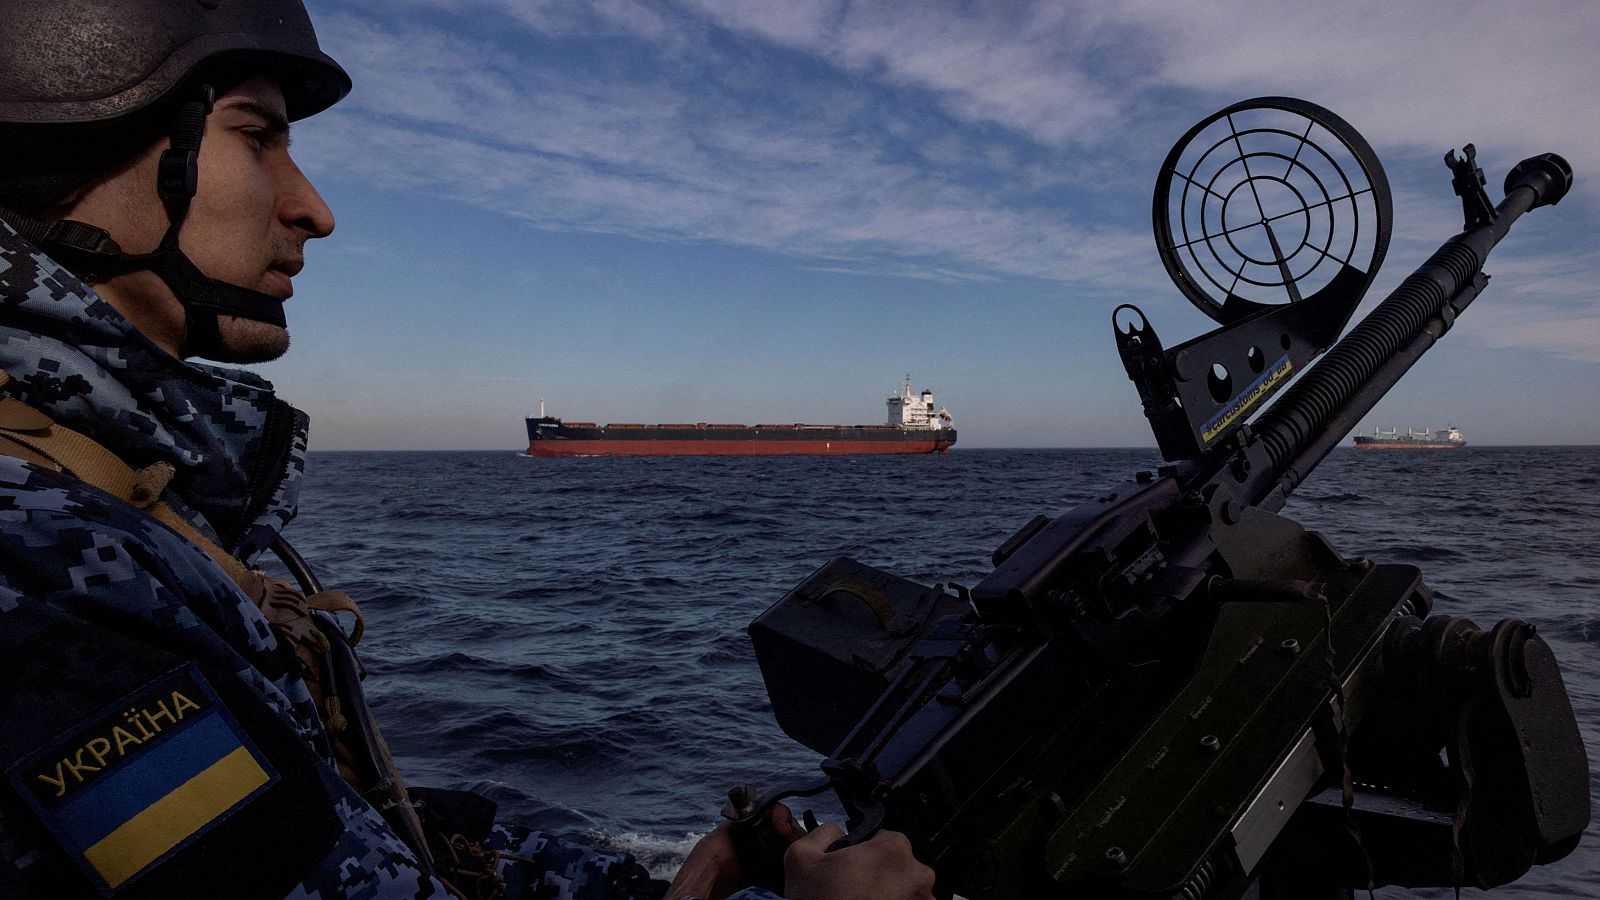 Un militar de la guardia costera de Ucrania maneja un arma en una lancha patrullera mientras un carguero pasa en el Mar Negro